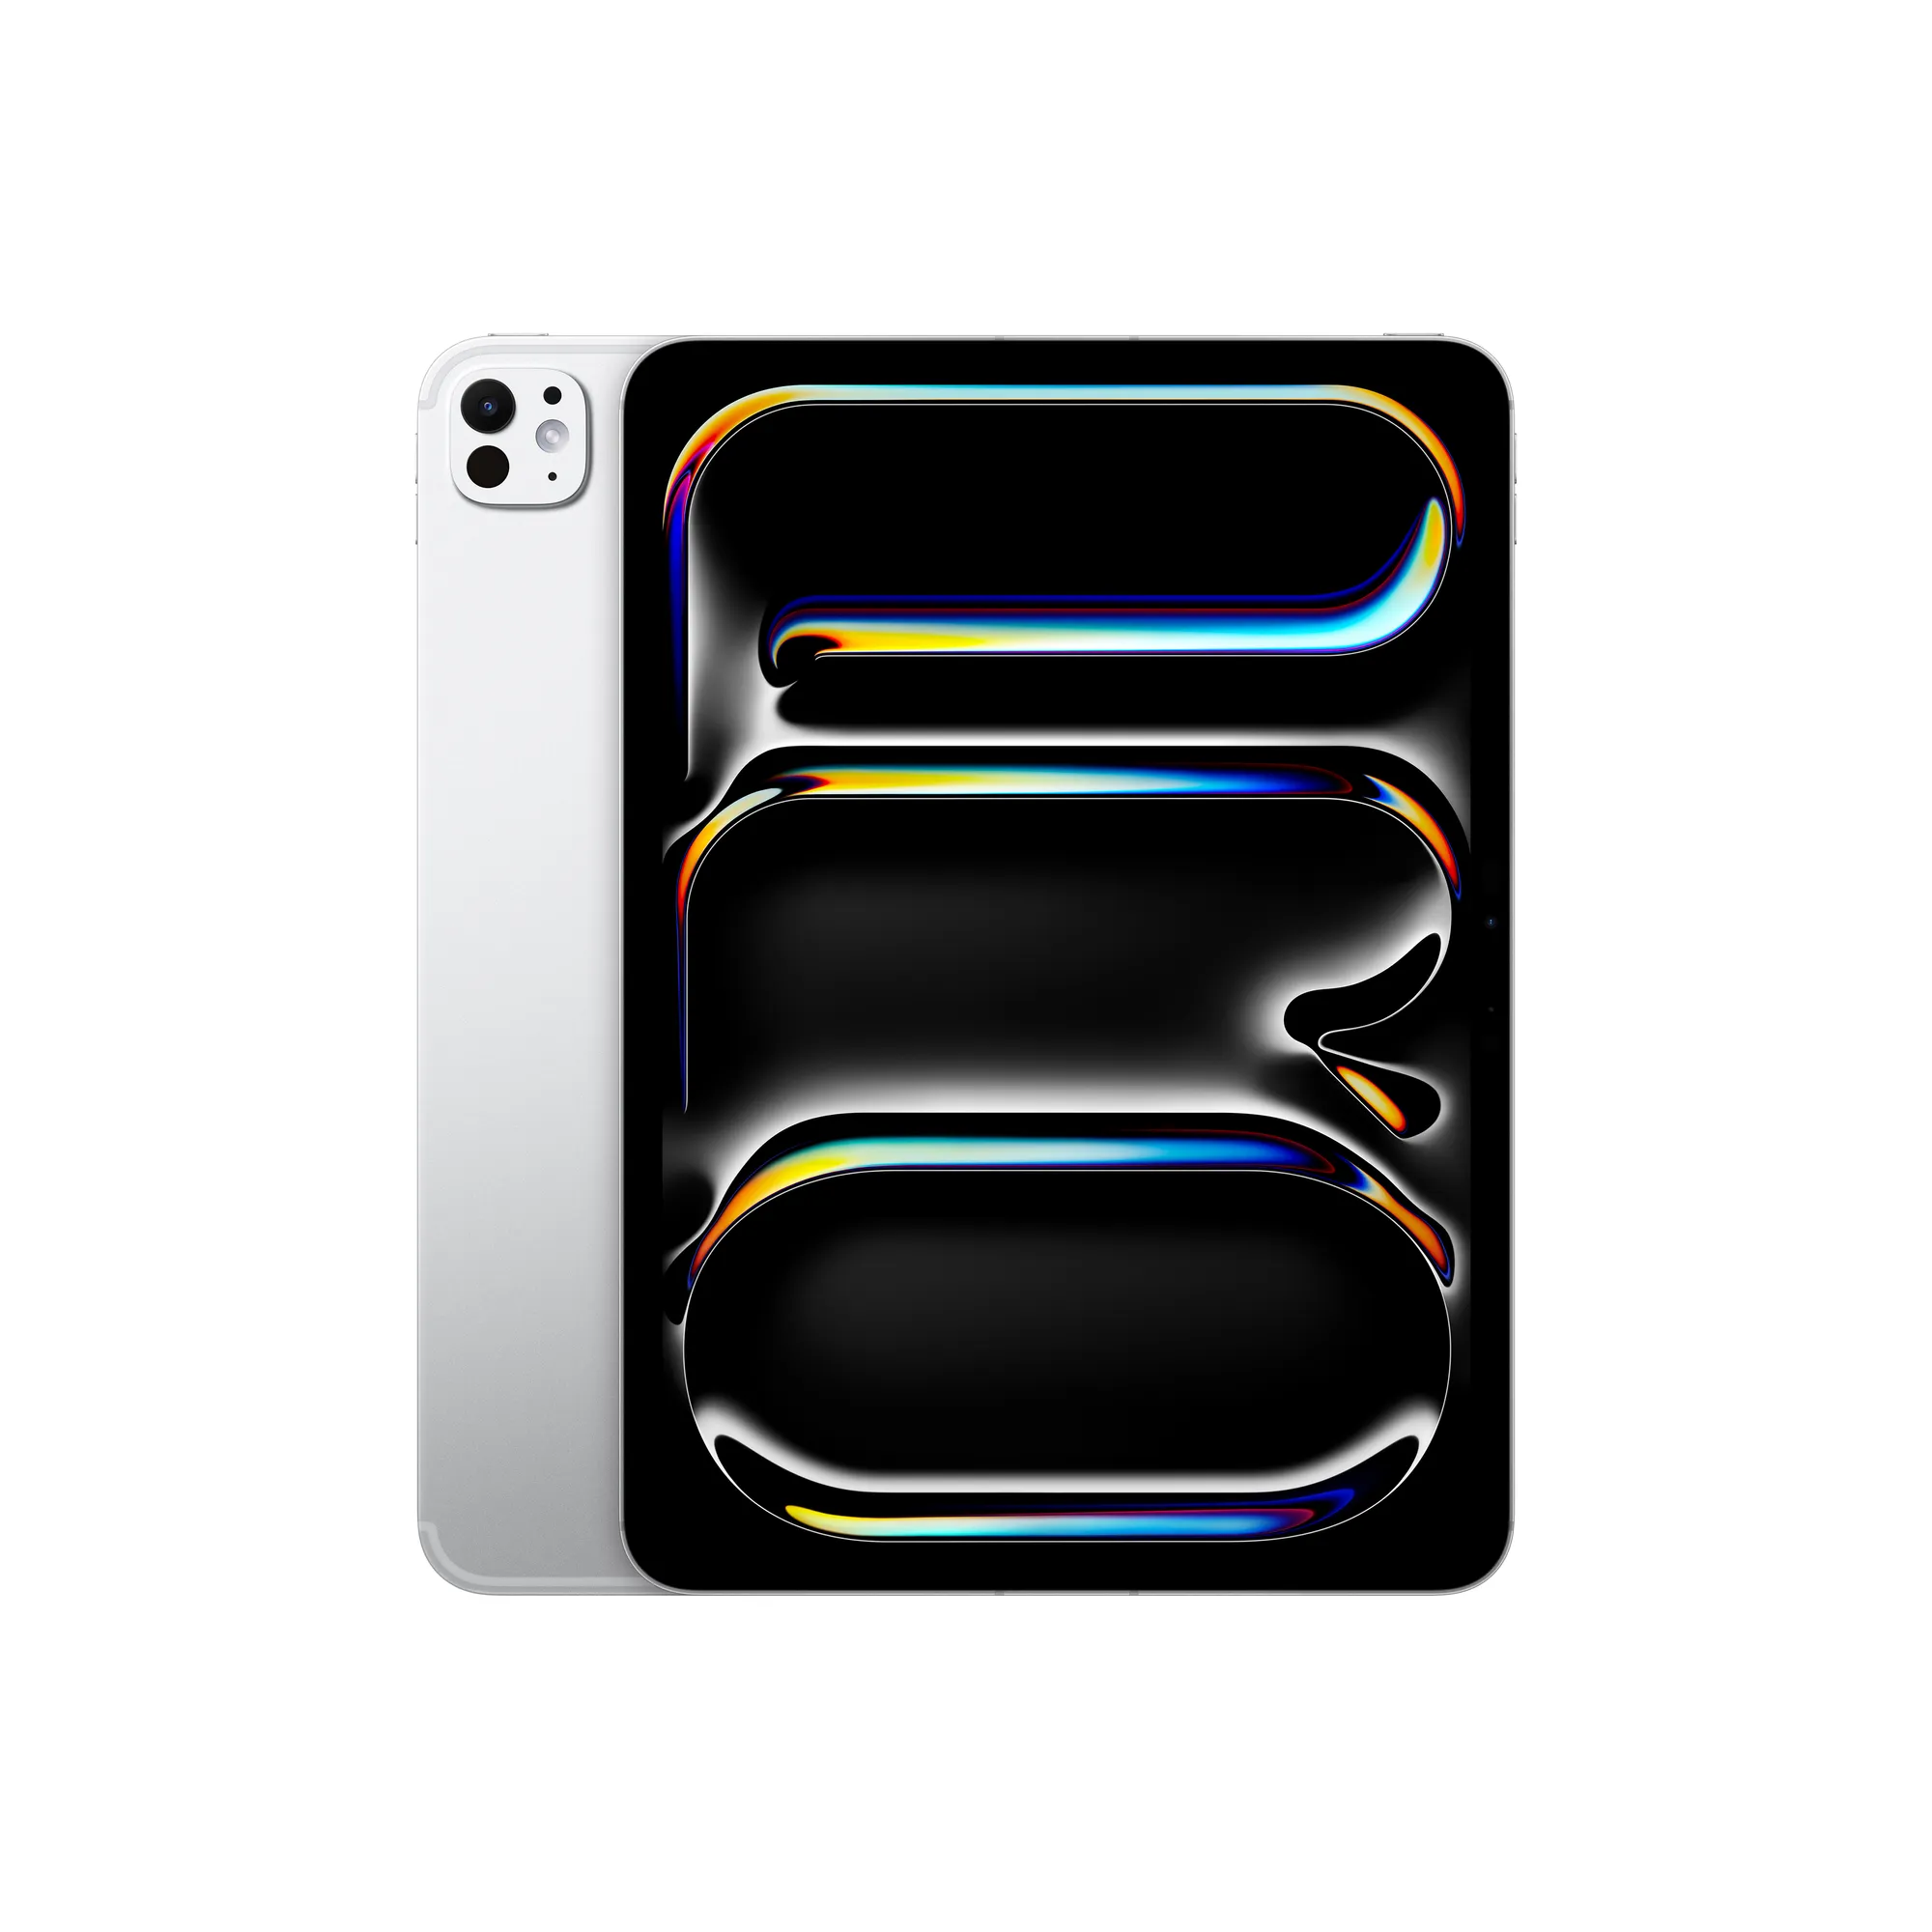 11 hüvelykes iPad Pro, Wi-Fi + Cellular, 256 GB, normál üveg – ezüst